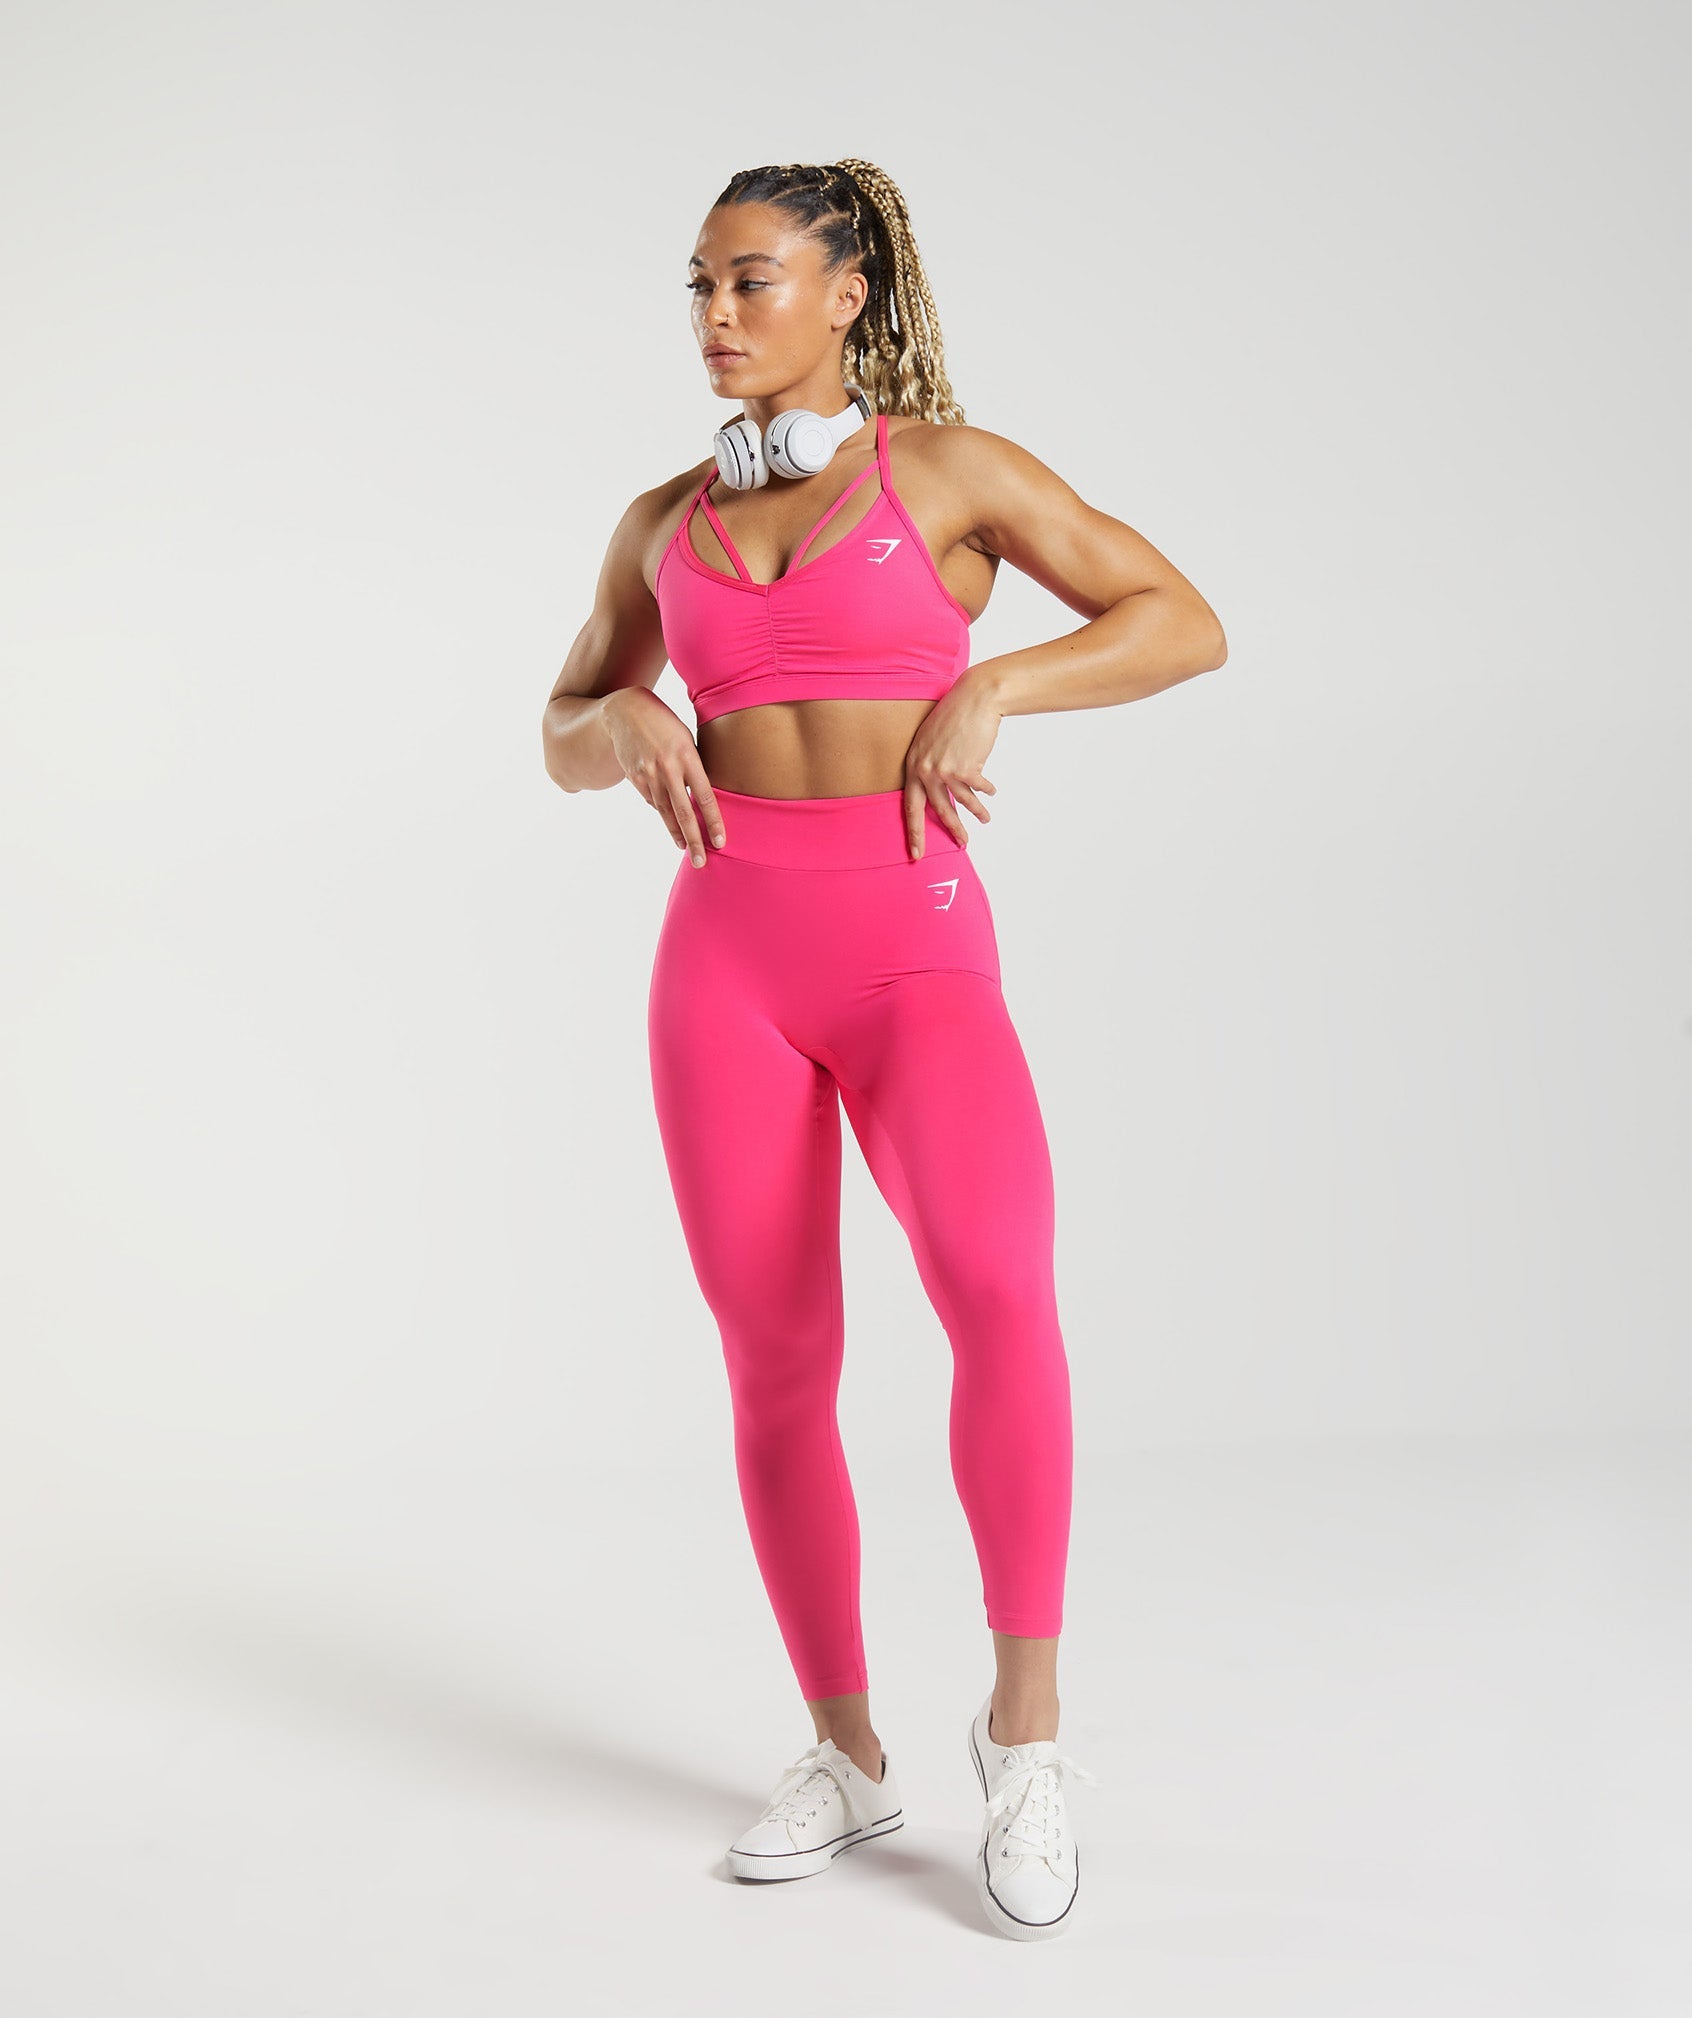 Miss Bikini Fitness Hot Pink Sports Bra Work Out Top